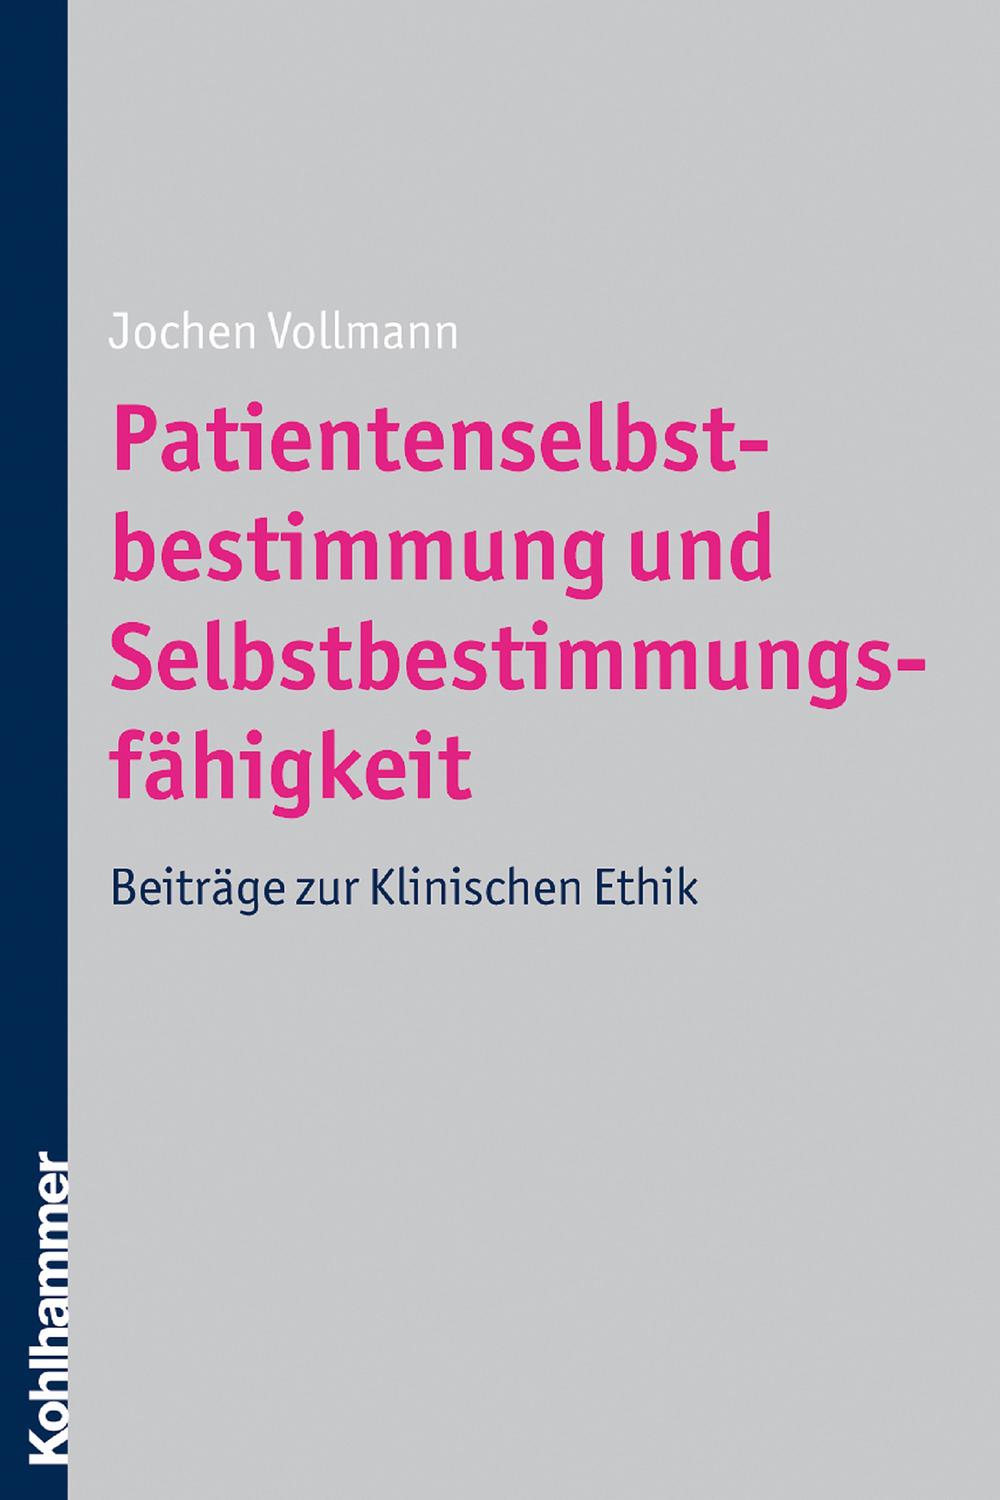 Patientenselbstbestimmung und Selbstbestimmungsfähigkeit - Jochen Vollmann